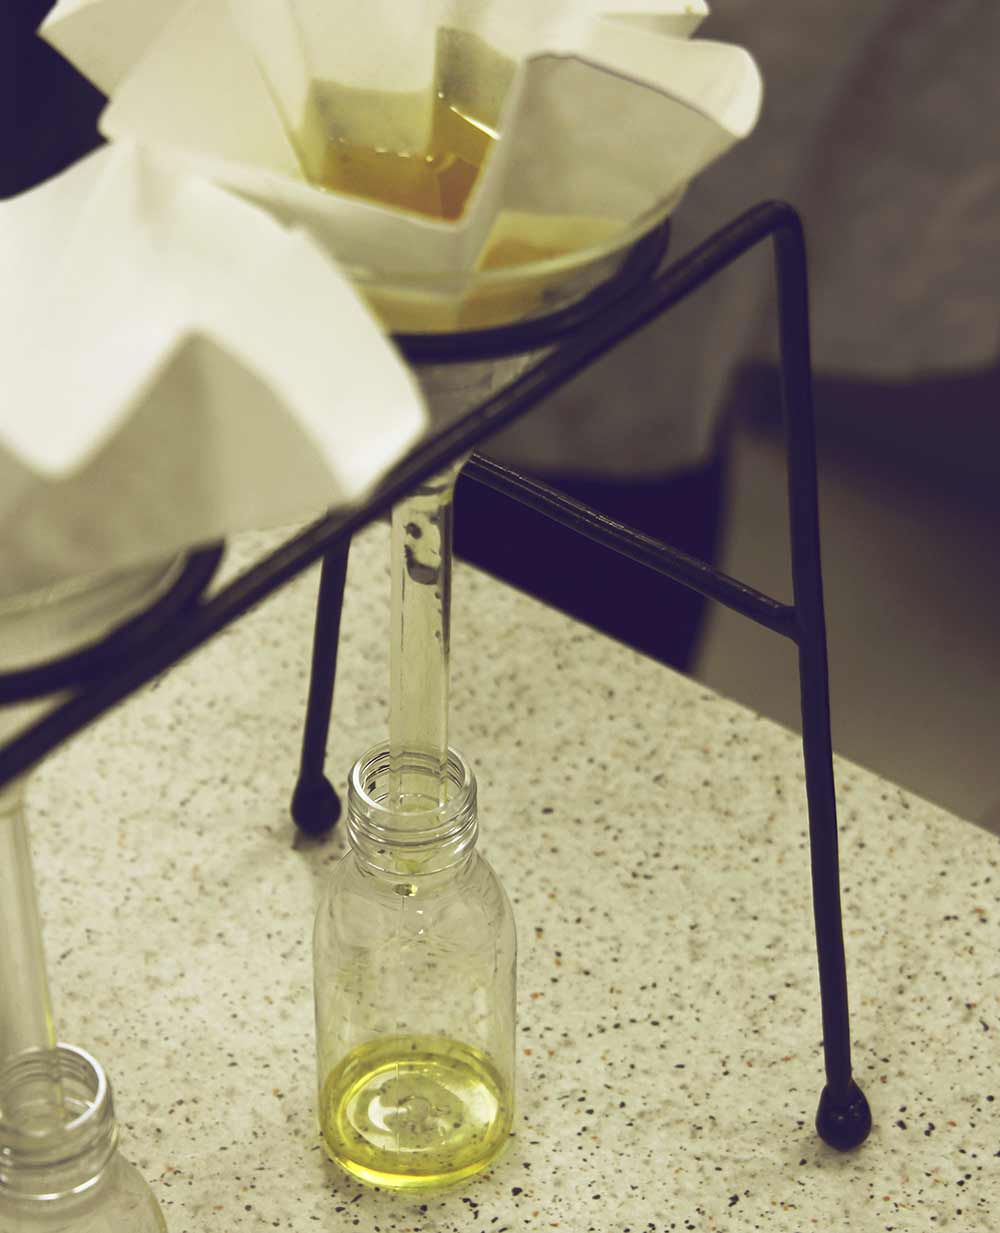 Olivenöl-Herstellung im Labor: das fertige Öl wird durch einen Filter in eine Flasche gefüllt